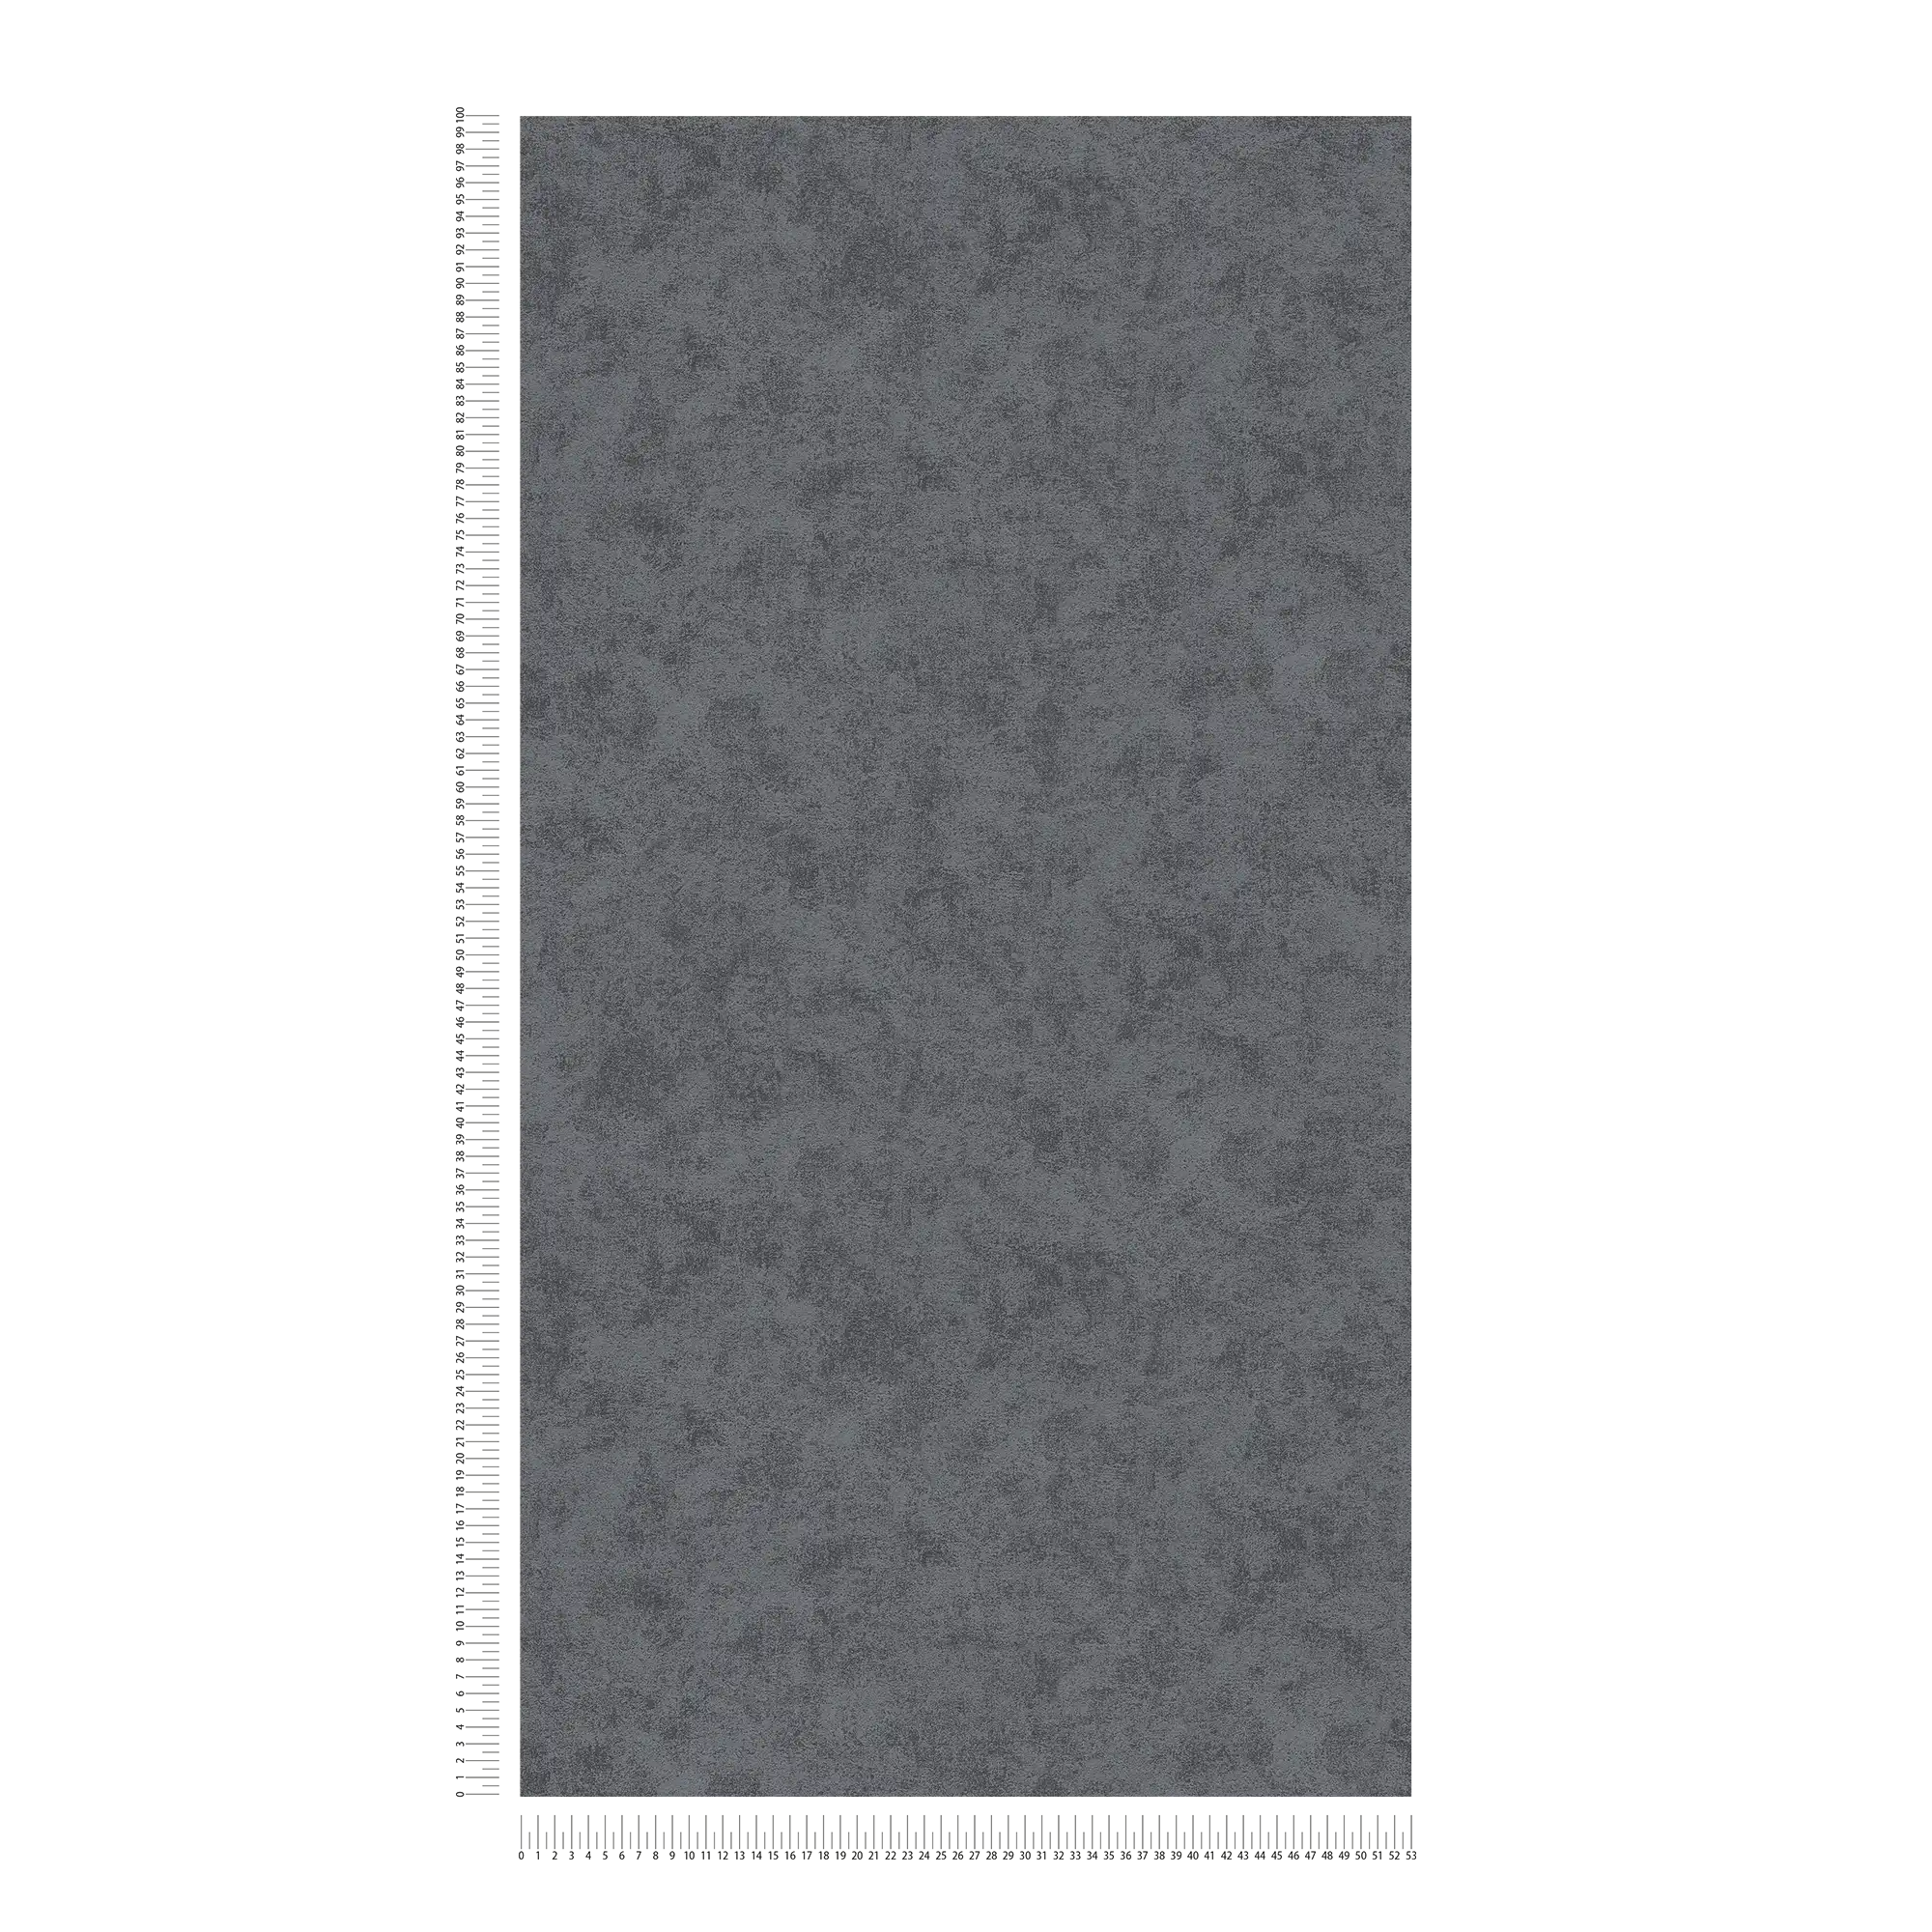             Carta da parati in tessuto non tessuto colorata e sfumata, struttura in rilievo - nero
        